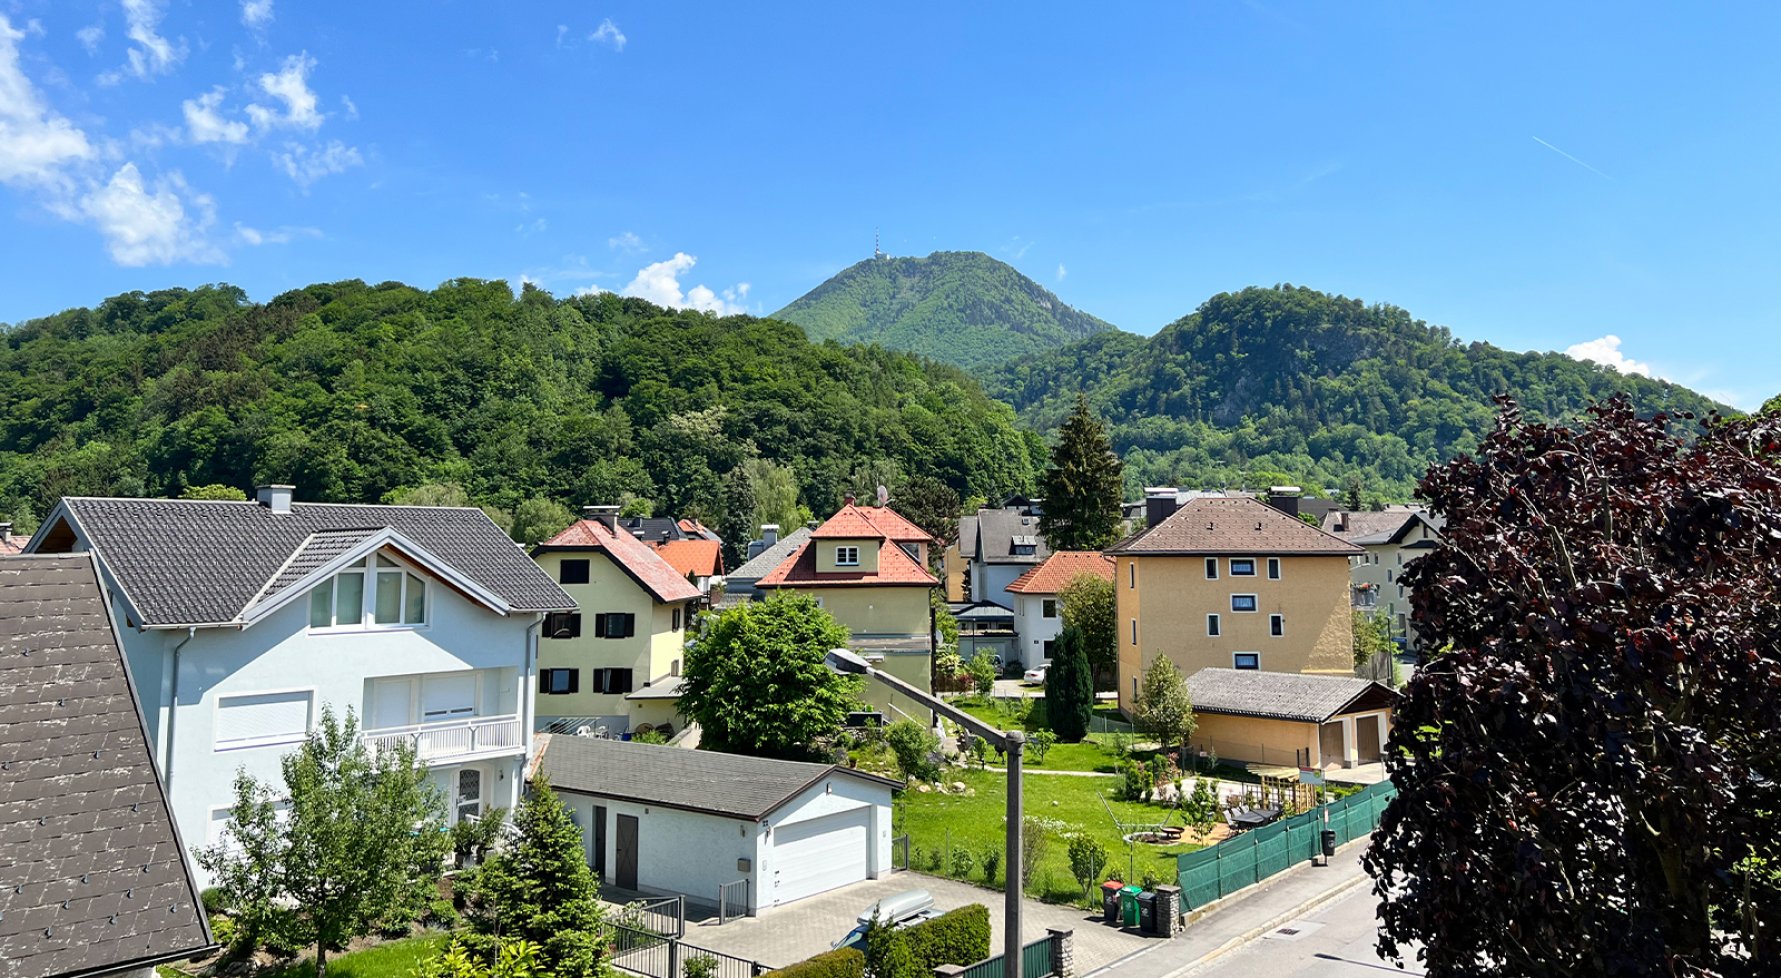 Immobilie in 5020 Salzburg - Gnigl: Liebe auf den ersten Blick! Sonnige Terrassen-Wohnung mit viel Platz! - bild 1